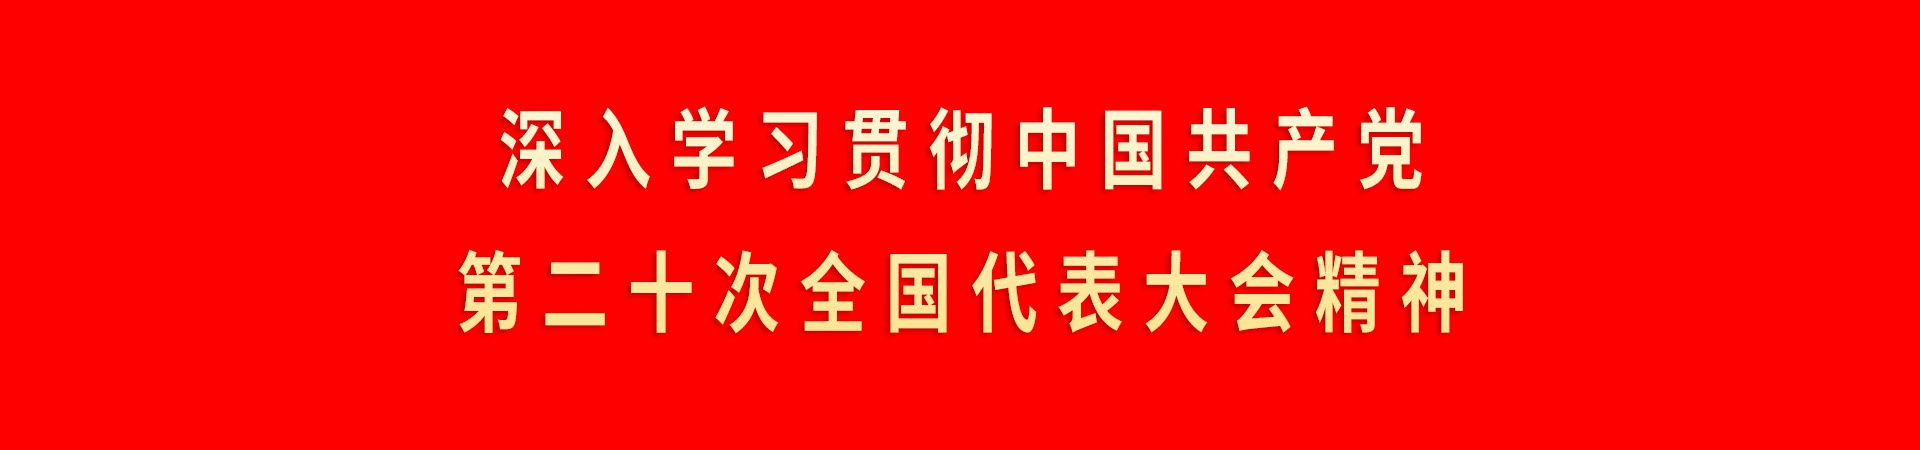 深入學習貫徹中國(guó)共産黨第二十次全國(guó)代表大(dà)會精神